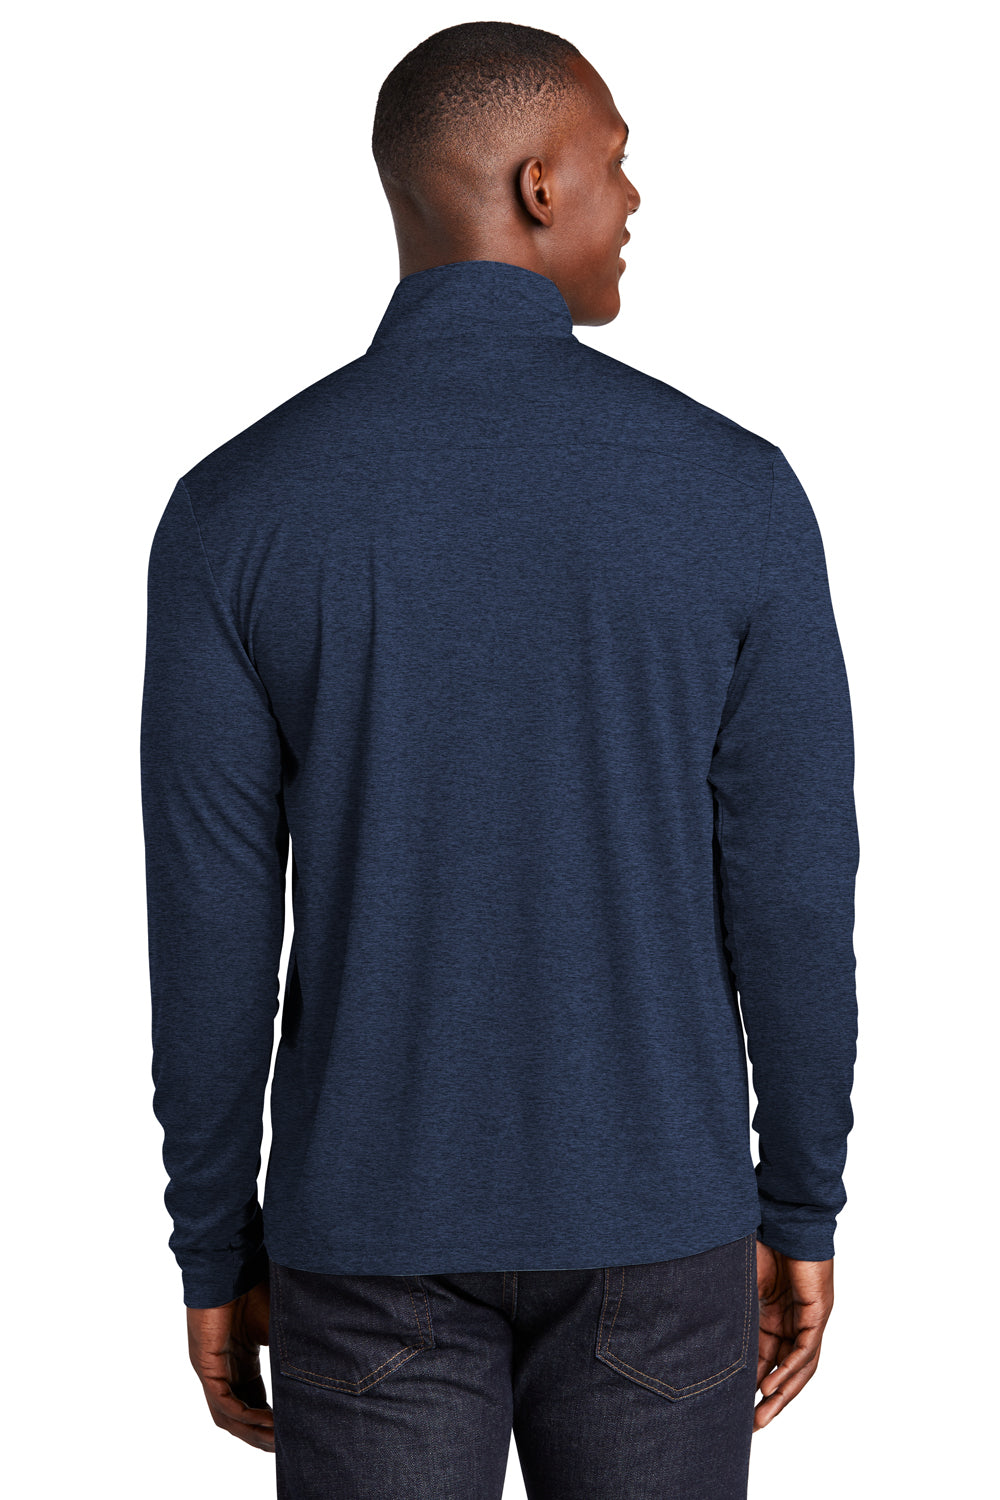 Sport-Tek Mens Endeavor 1/4 Zip Sweatshirt Heather Dark Royal Blue Side